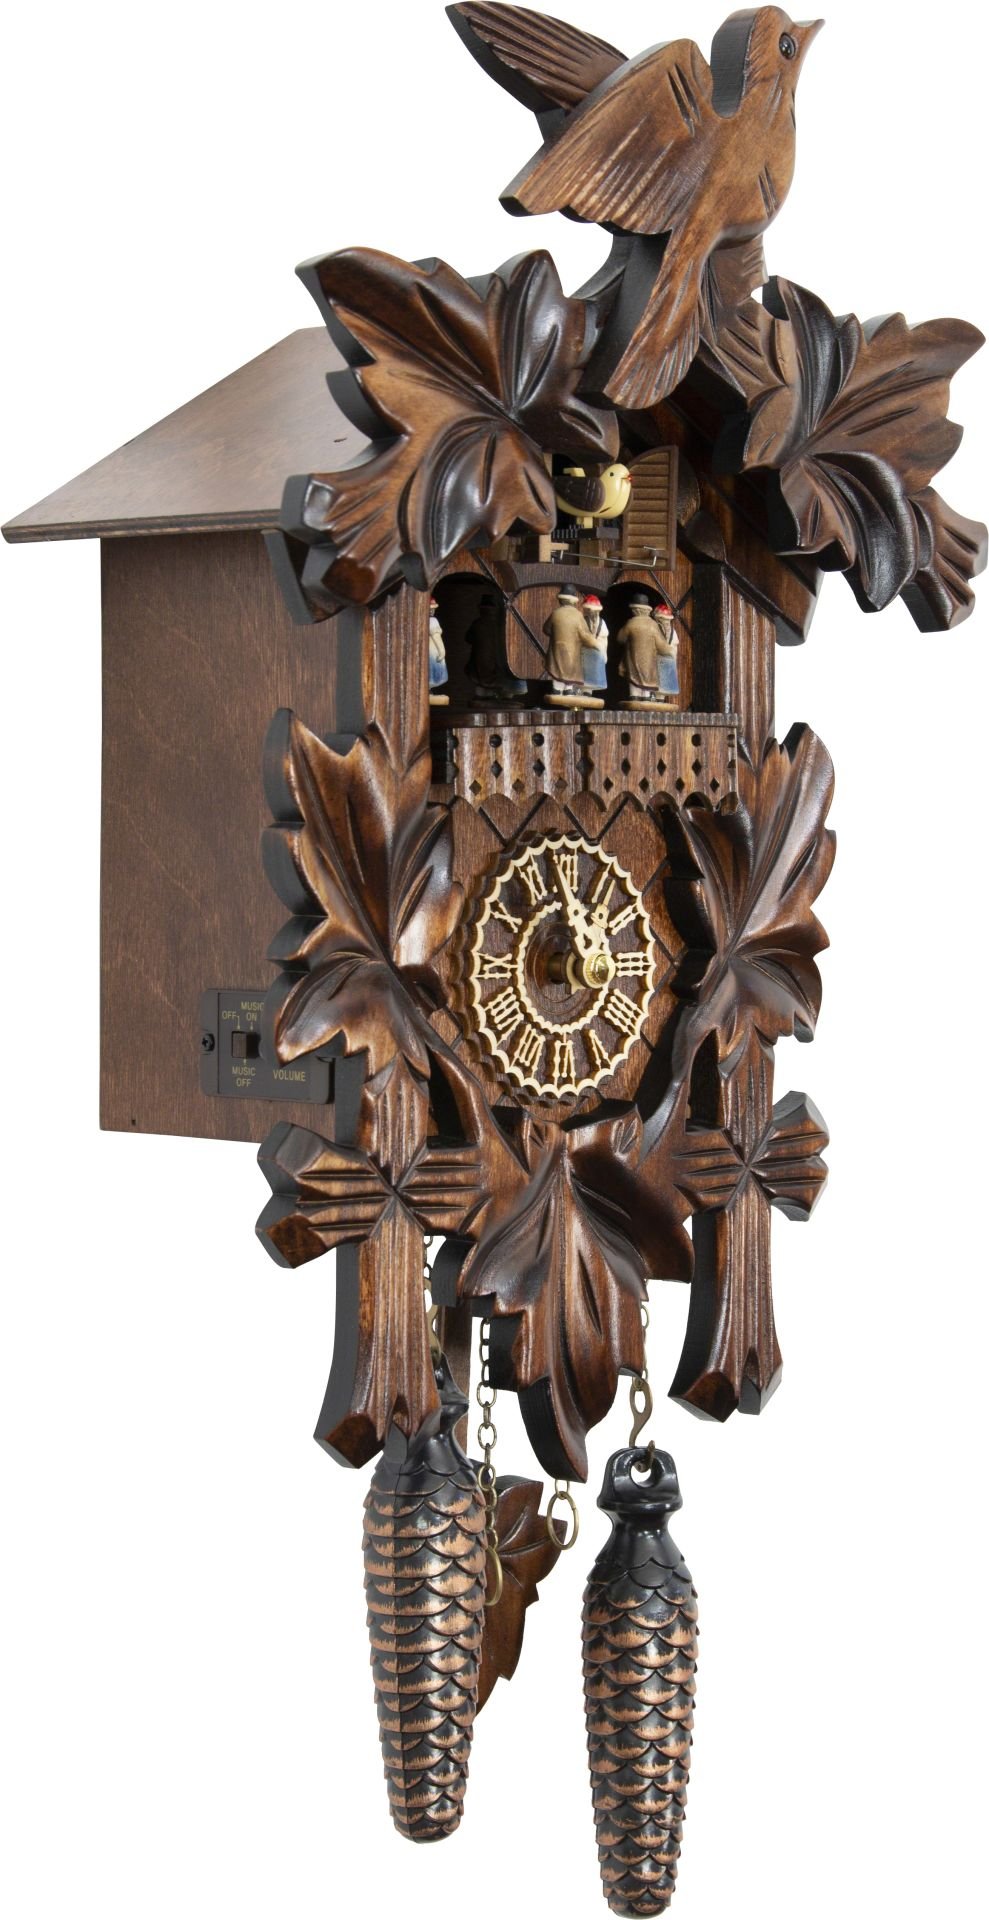 Horloge coucou traditionnelle mouvement à quartz 35cm de Trenkle Uhren